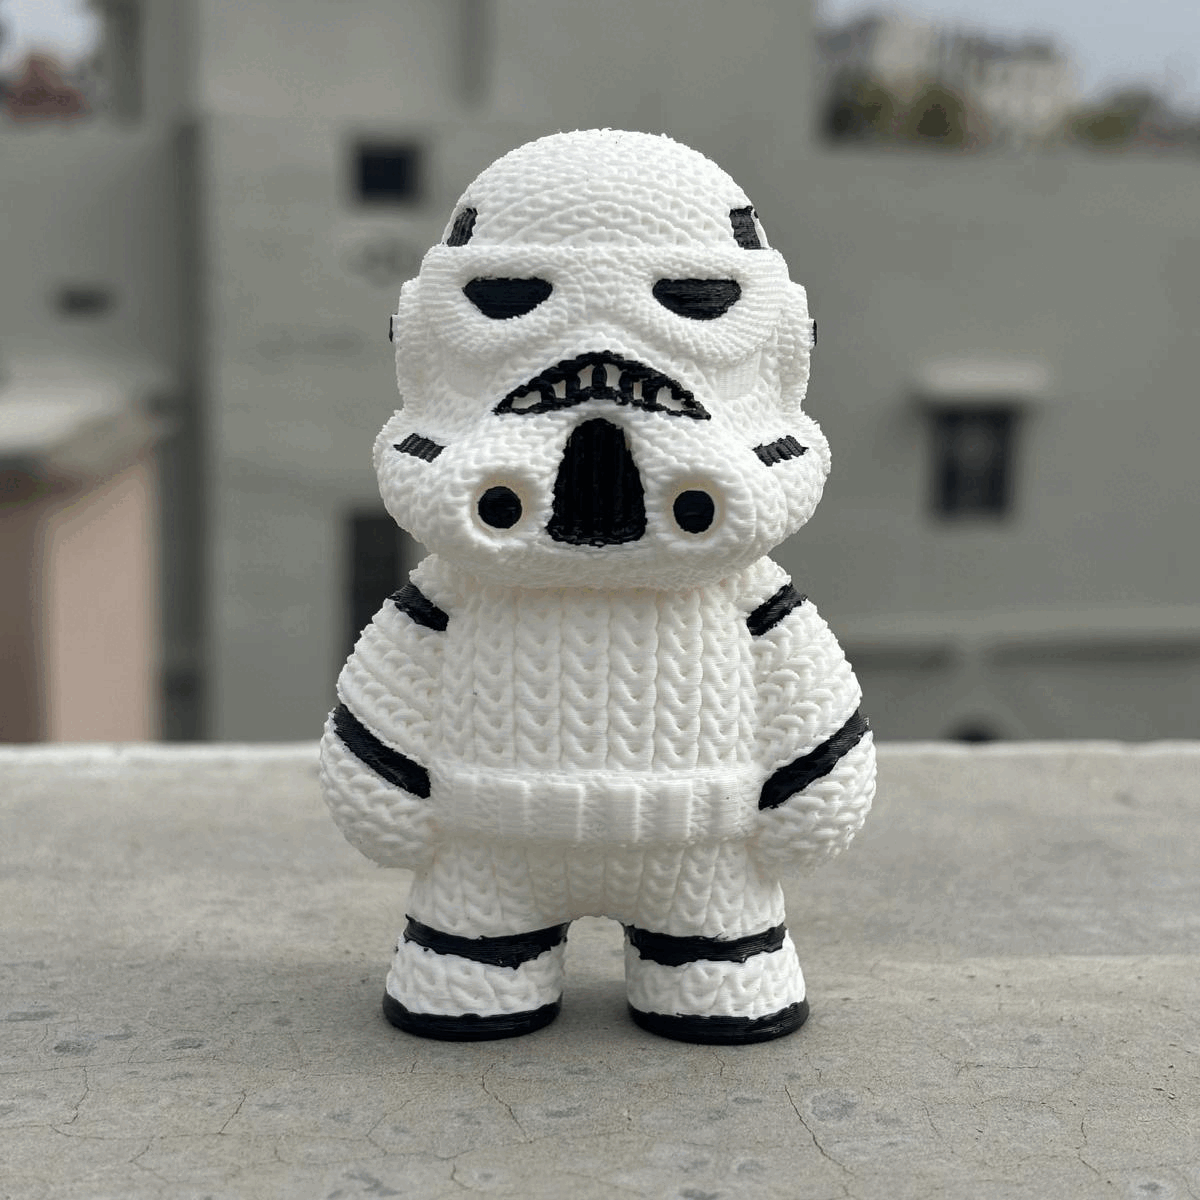 Knitted Stromtrooper